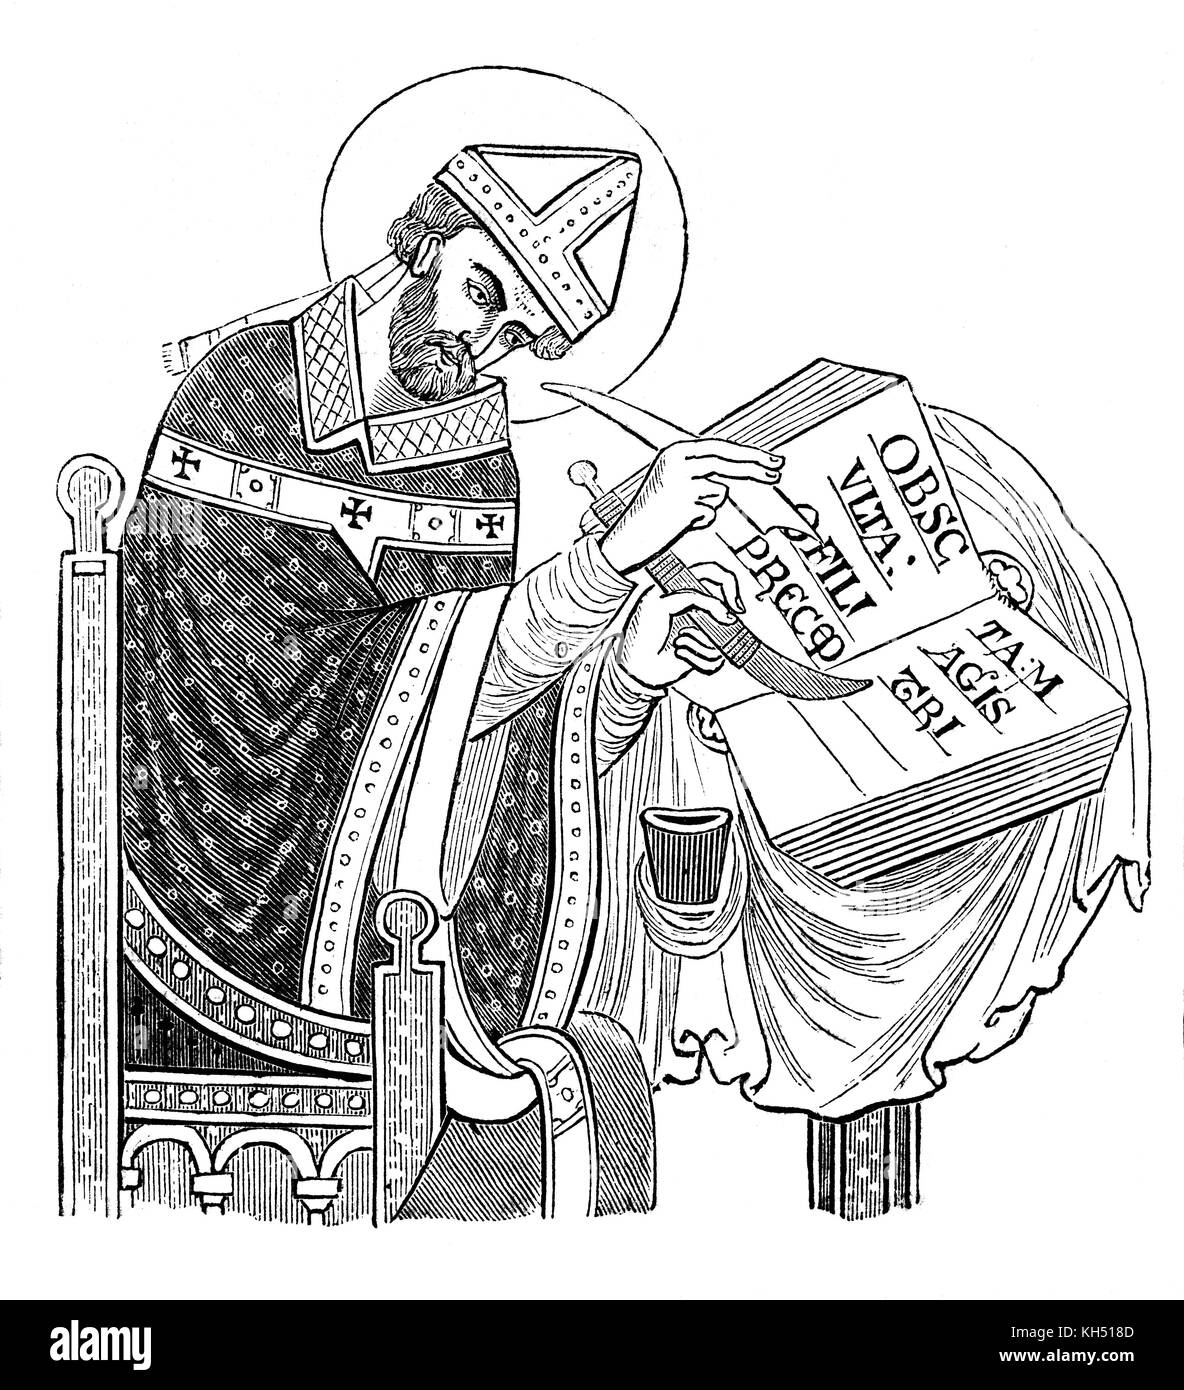 St Dunstan(909 - 988) fue sucesivamente Abad de la Abadía de Glastonbury, Obispo de Worcester, Obispo de Londres, y el Arzobispo de Canterbury, posteriormente canonizado como un santo después de él restauró la vida monástica en Inglaterra y la reforma de la Iglesia inglesa. Fue un artista y scribe, que era experto en "hacer una foto y formando las letras". Foto de stock